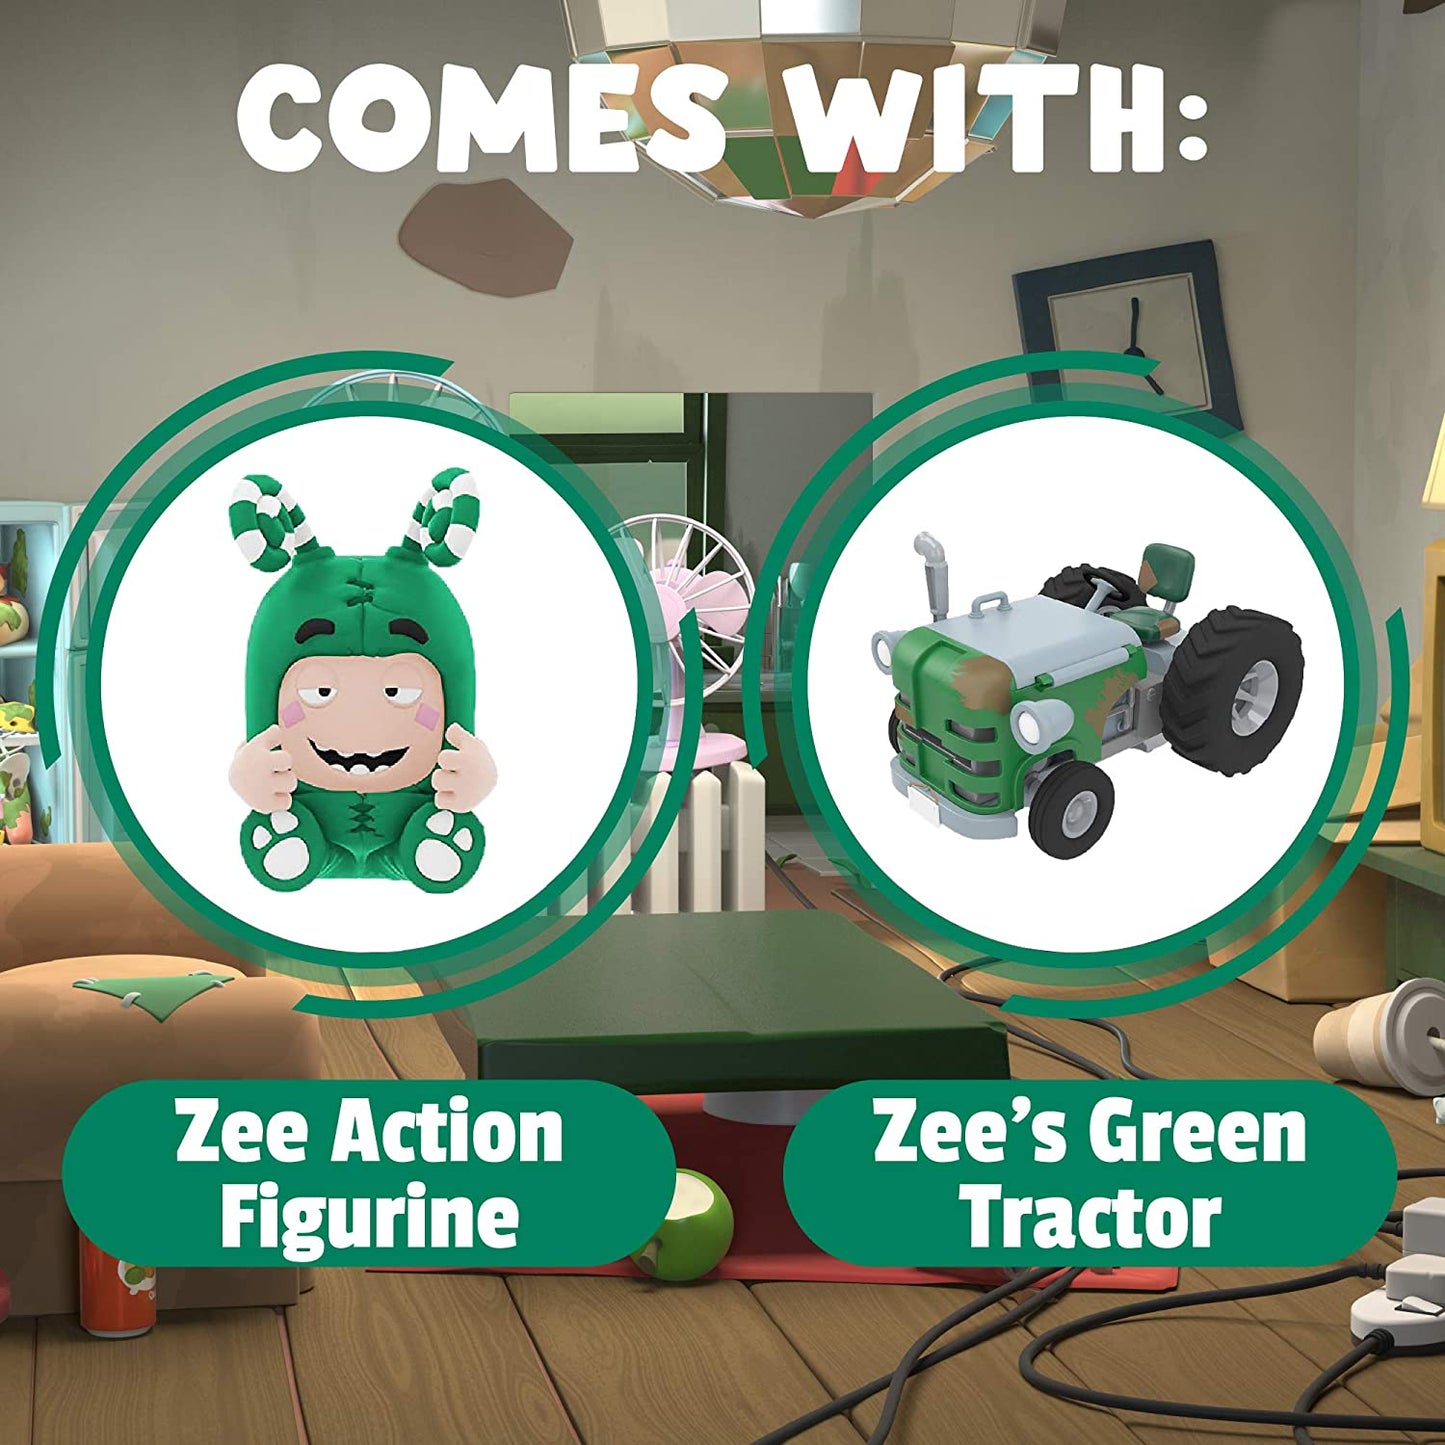 Oddbods Action Vehicle Zee's Tractor